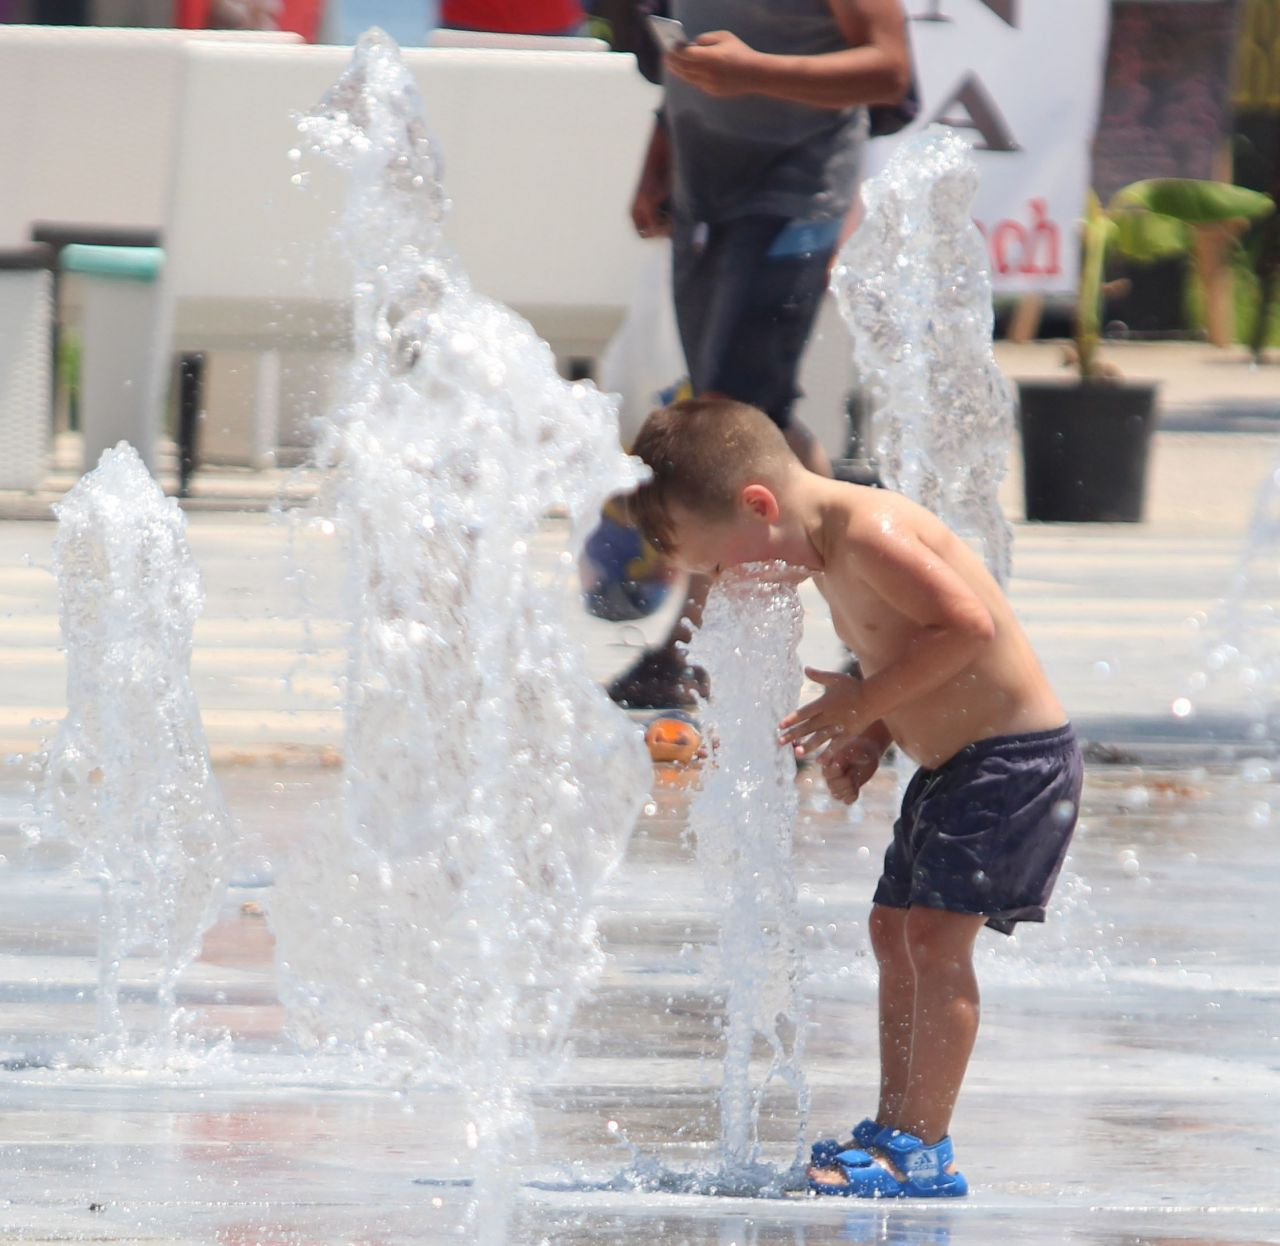 Antalya’da termometreler 42 dereceyi gösterdi! Adres plaj oldu